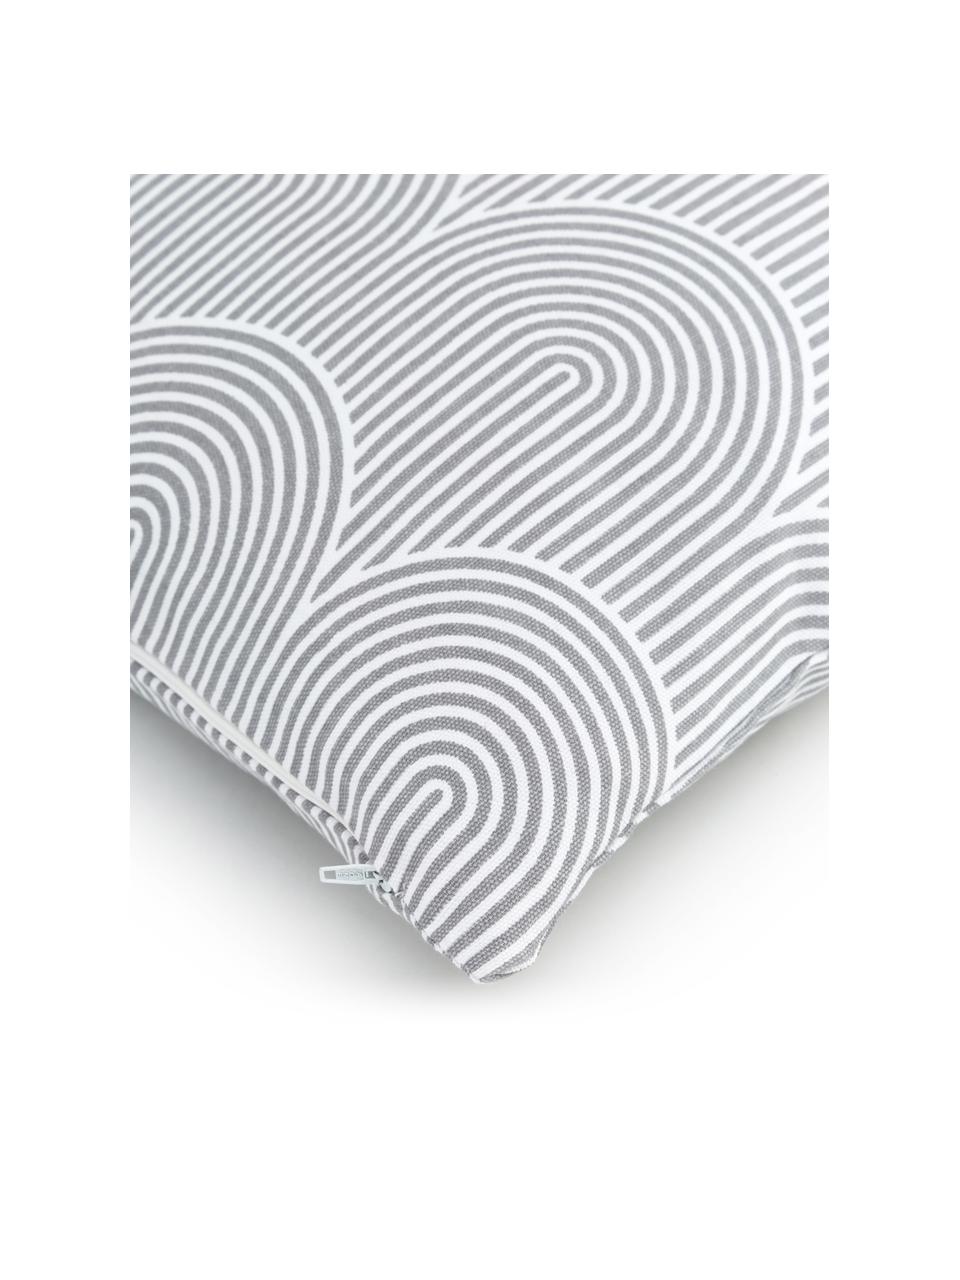 Baumwoll-Kissenhülle Arc, 100% Baumwolle, Grau, Weiß, B 45 x L 45 cm